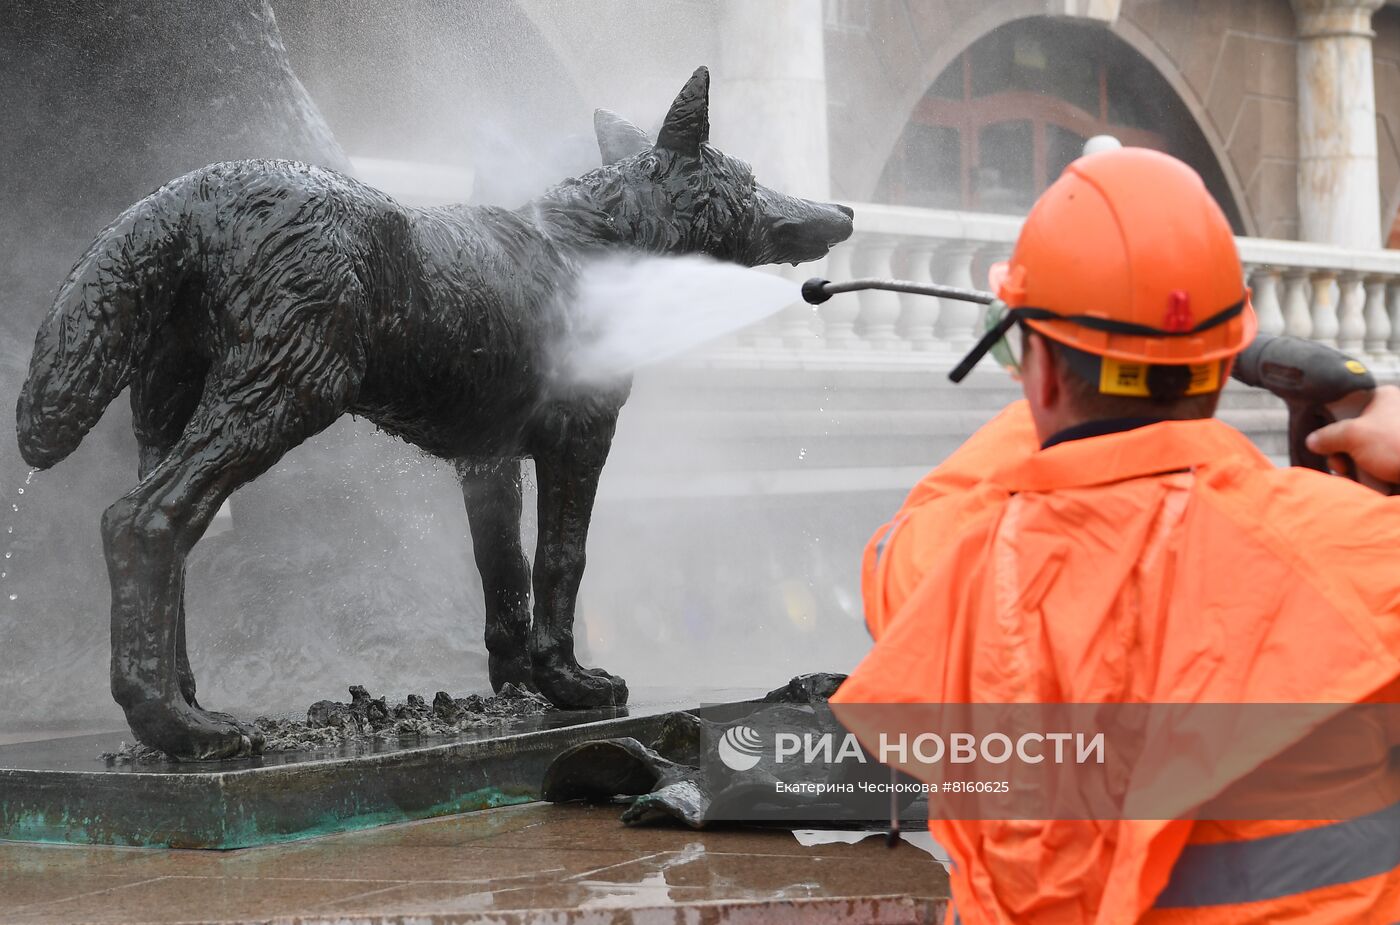 Подготовка фонтана на Манежной площади к летнему сезону